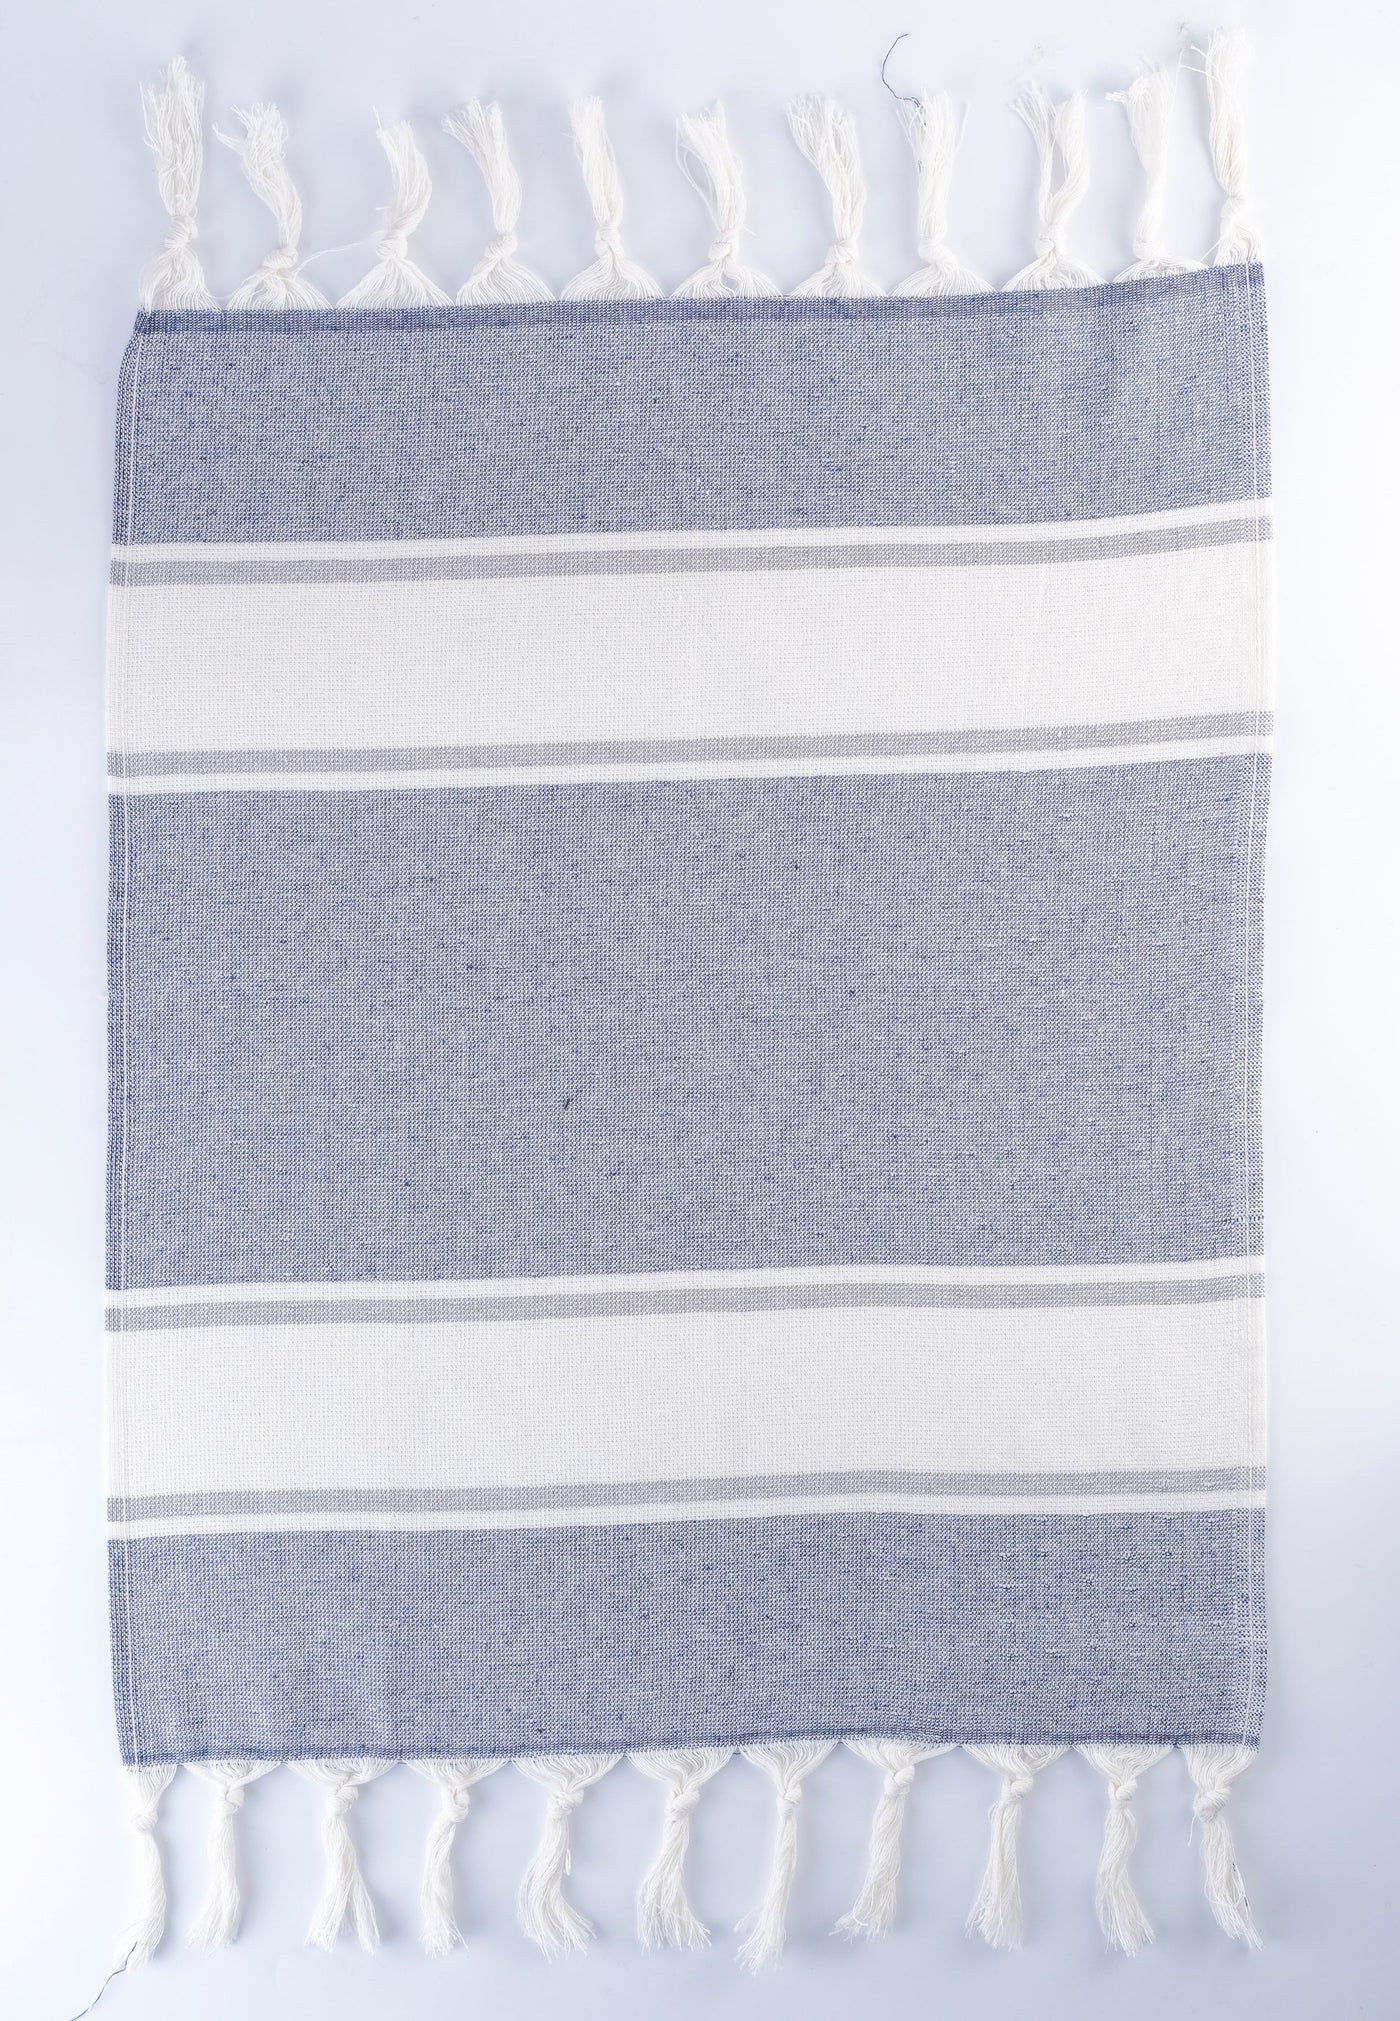 Smyrna Turkish Hand / Kitchen Towel 4 pack 23x17in by La'Hammam